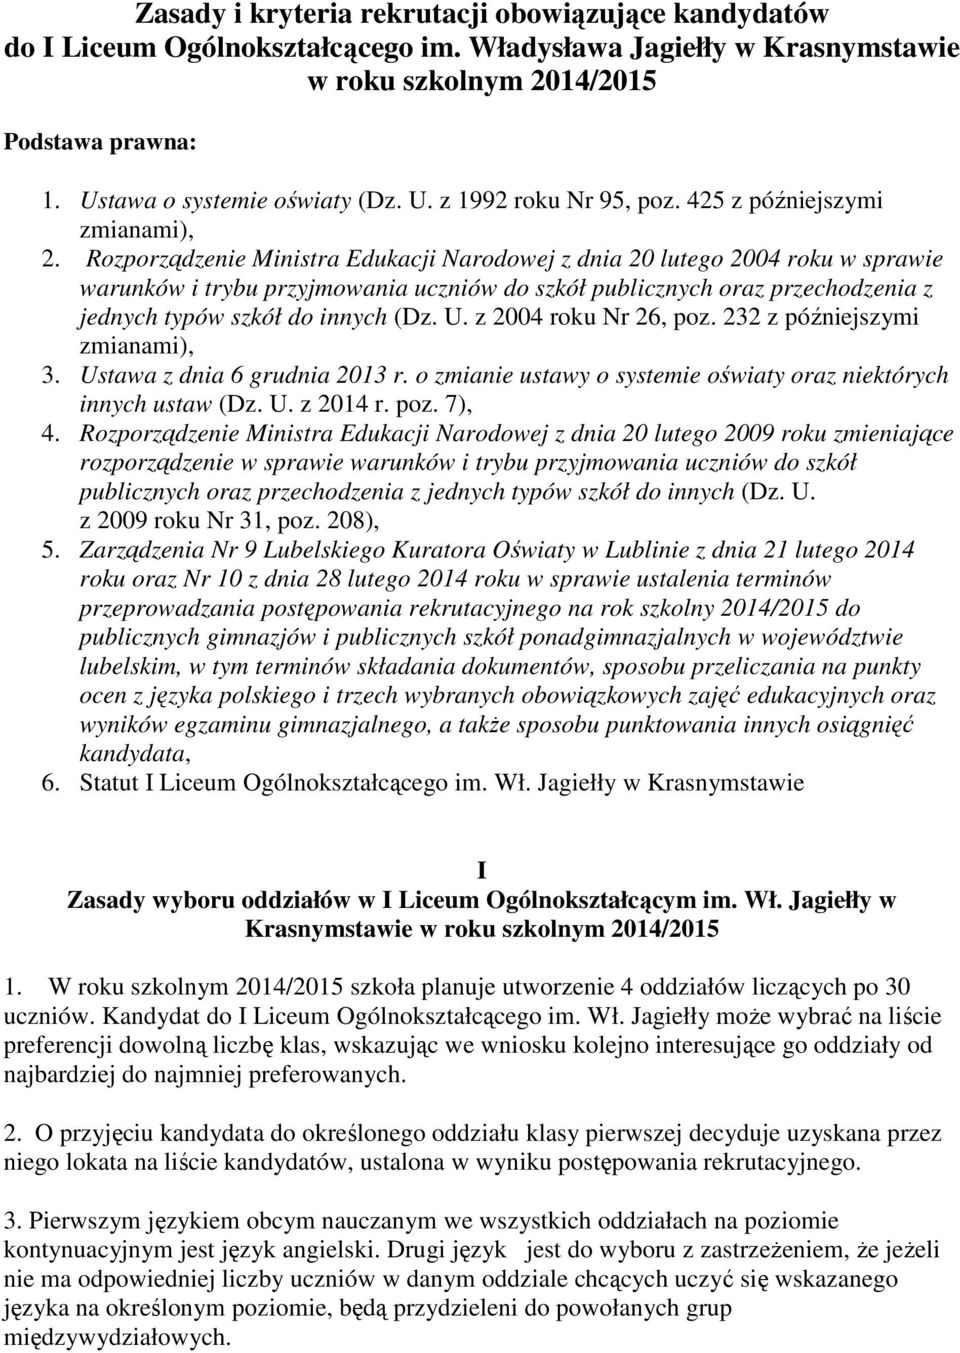 Rozporządzenie Ministra Edukacji Narodowej z dnia 20 lutego 2004 roku w sprawie warunków i trybu przyjmowania uczniów do szkół publicznych oraz przechodzenia z jednych typów szkół do innych (Dz. U.